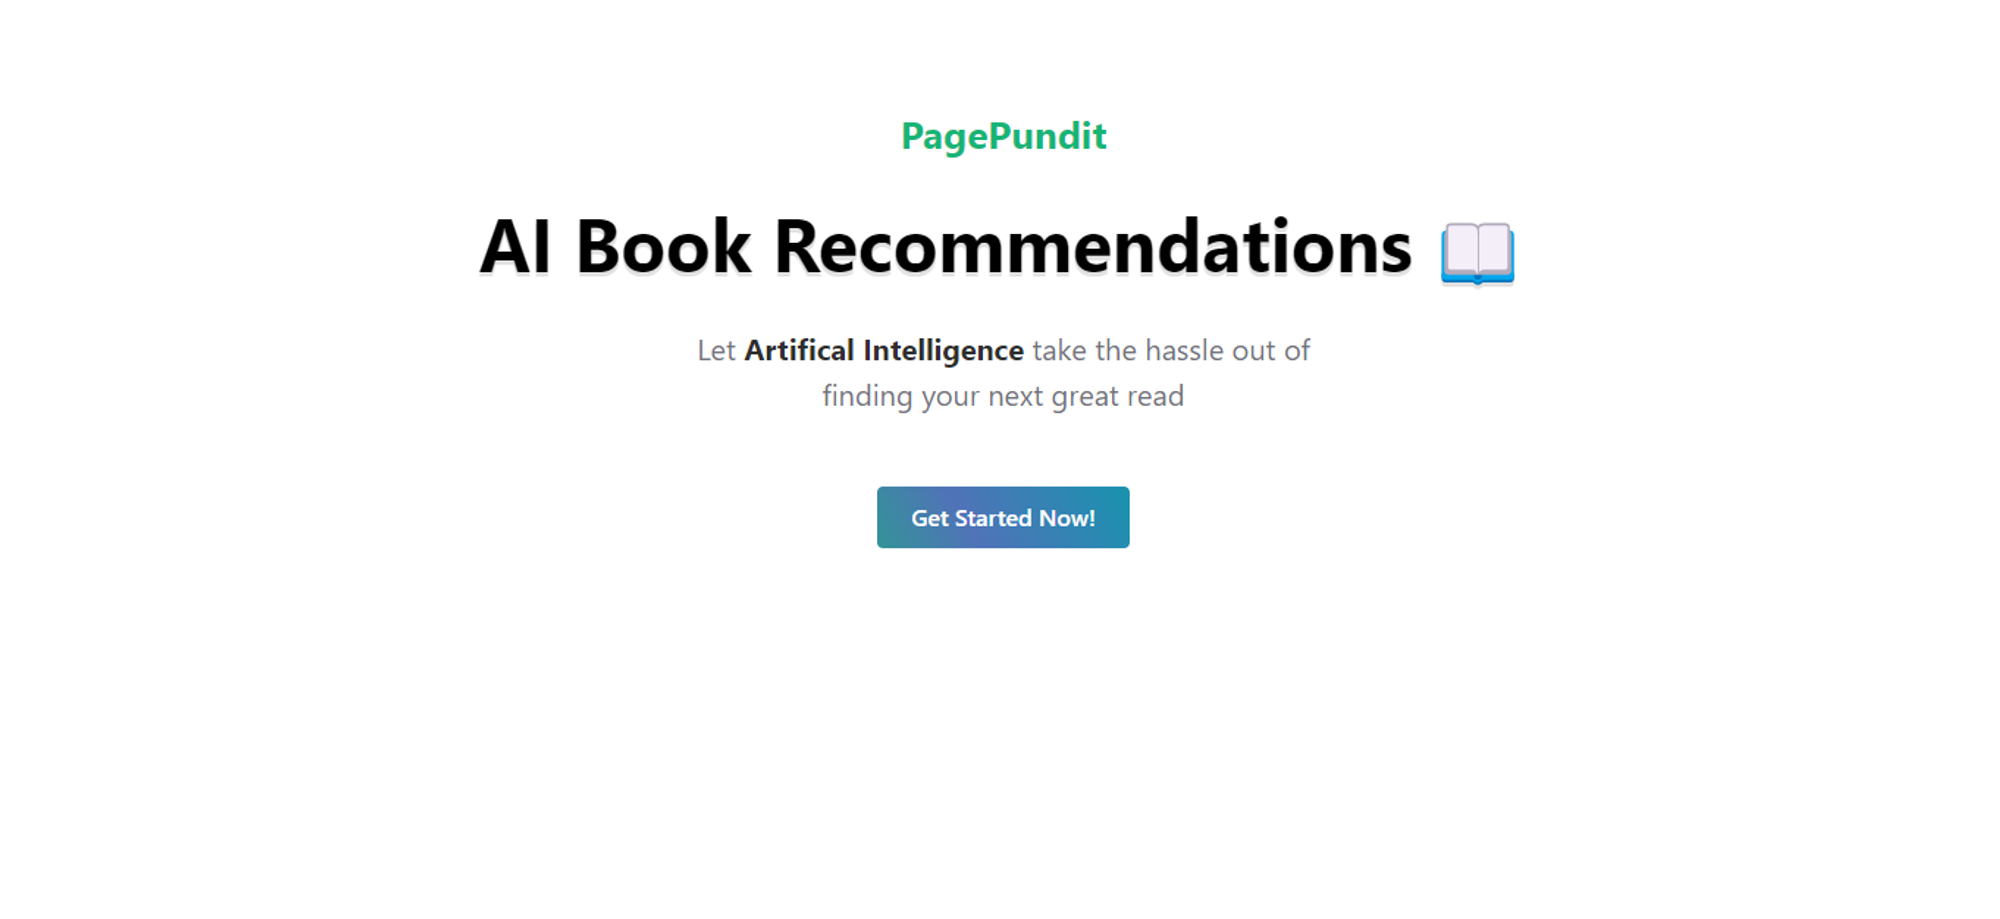 PagePundit.com: Descubre libros con IA